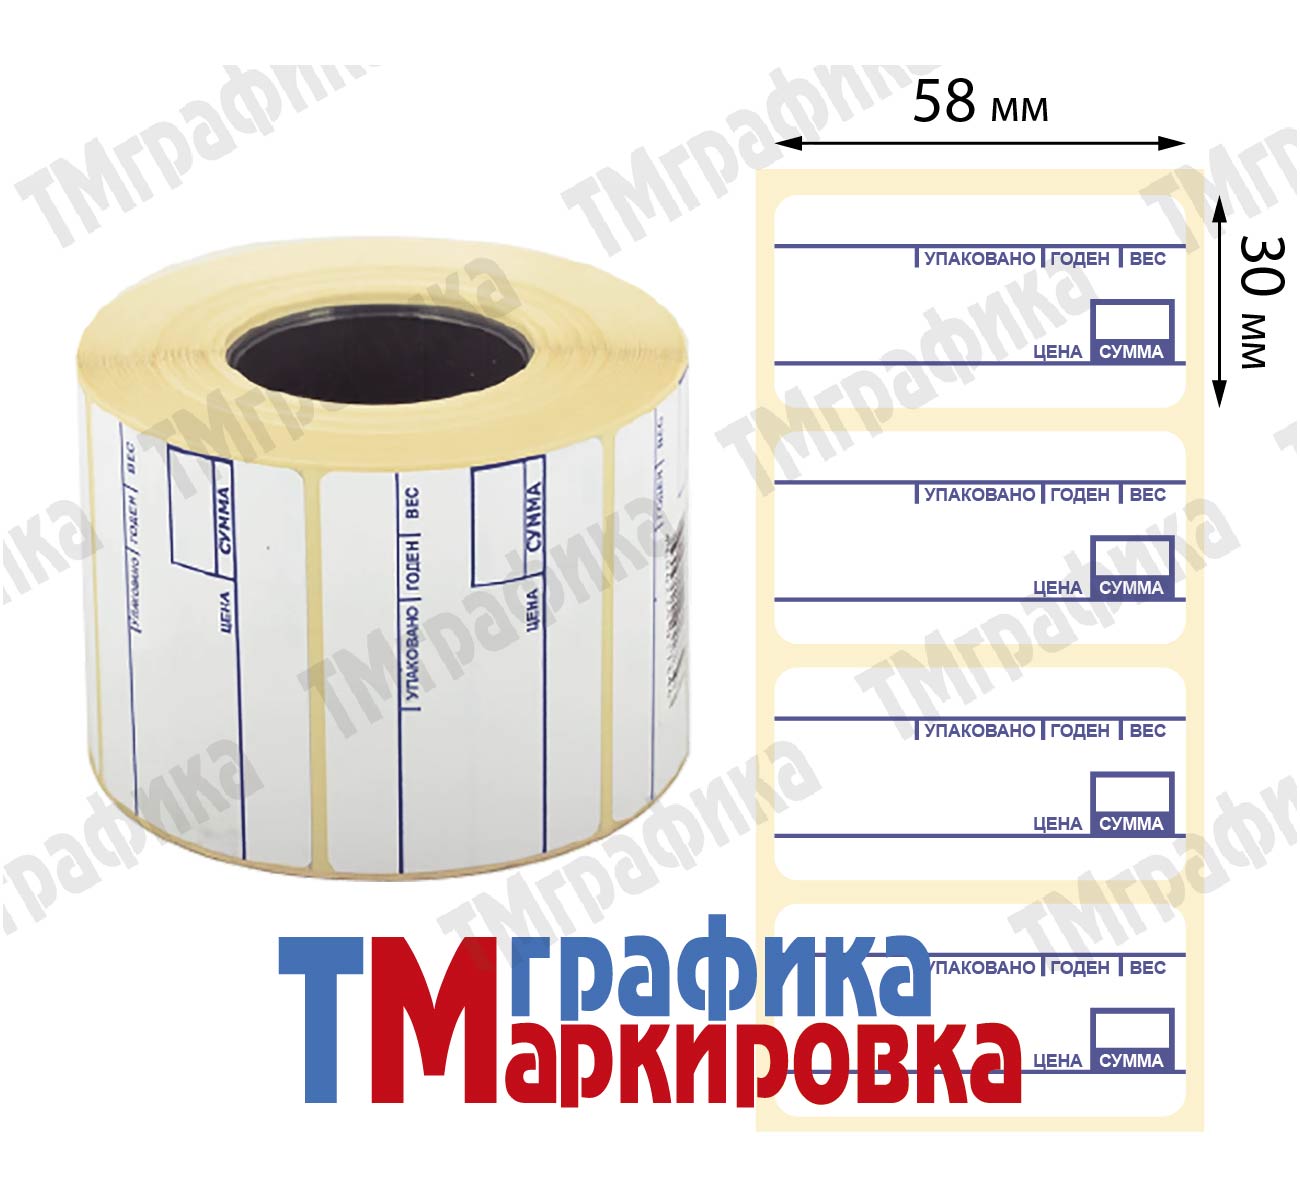 58х30 мм, 900 шт. весовая этикетка Термоэтикетки Эко - 240.21 руб.